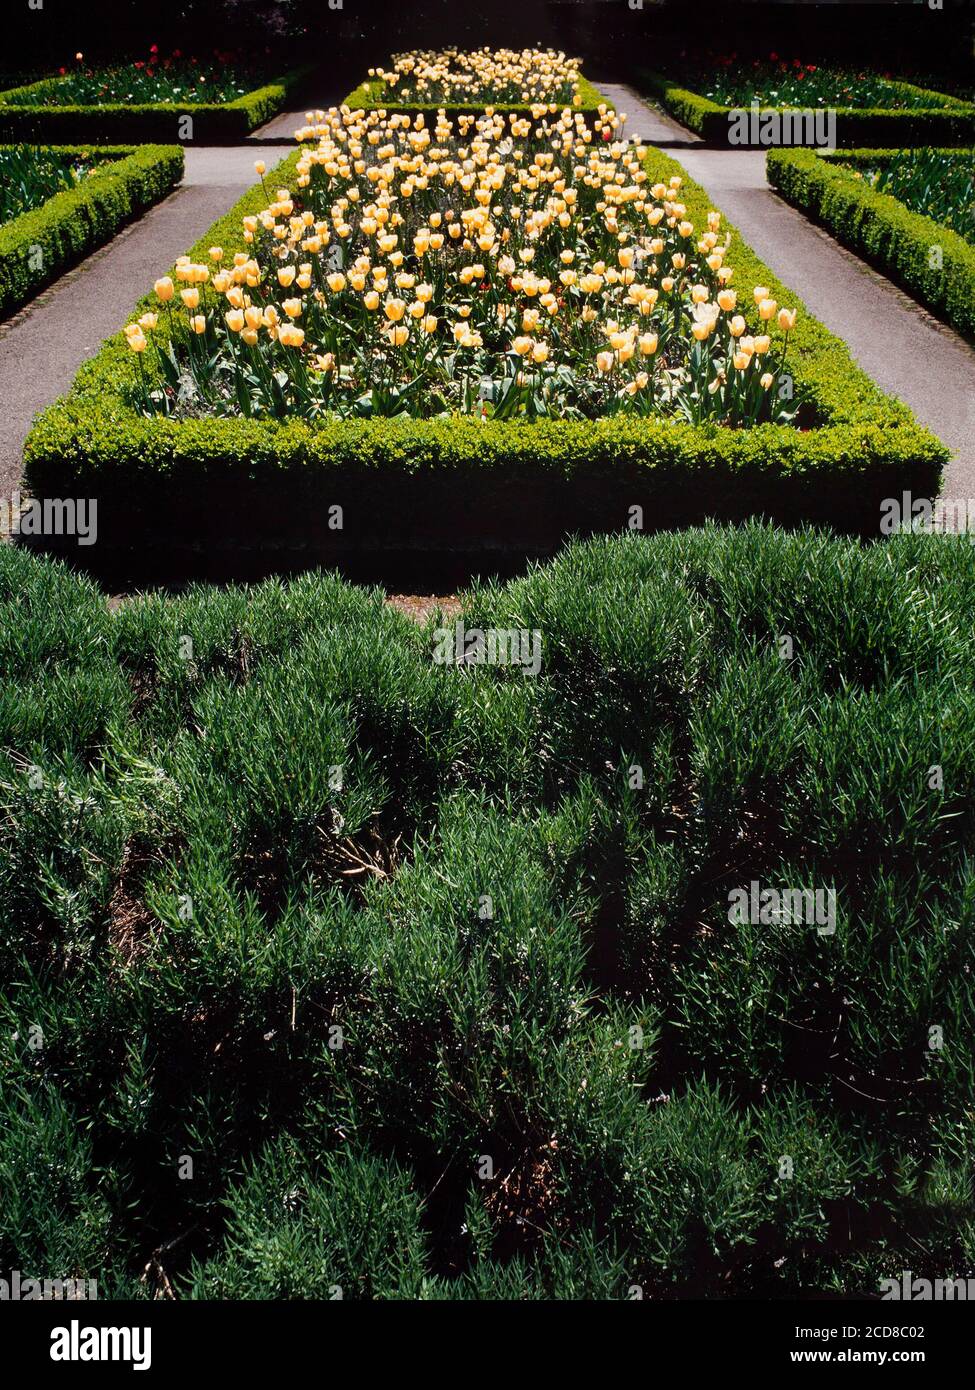 Box Hedging, Buxus sp. Grenzen formale Blumenbeete, beliebte Wahl für dekorative Hedging. Stockfoto